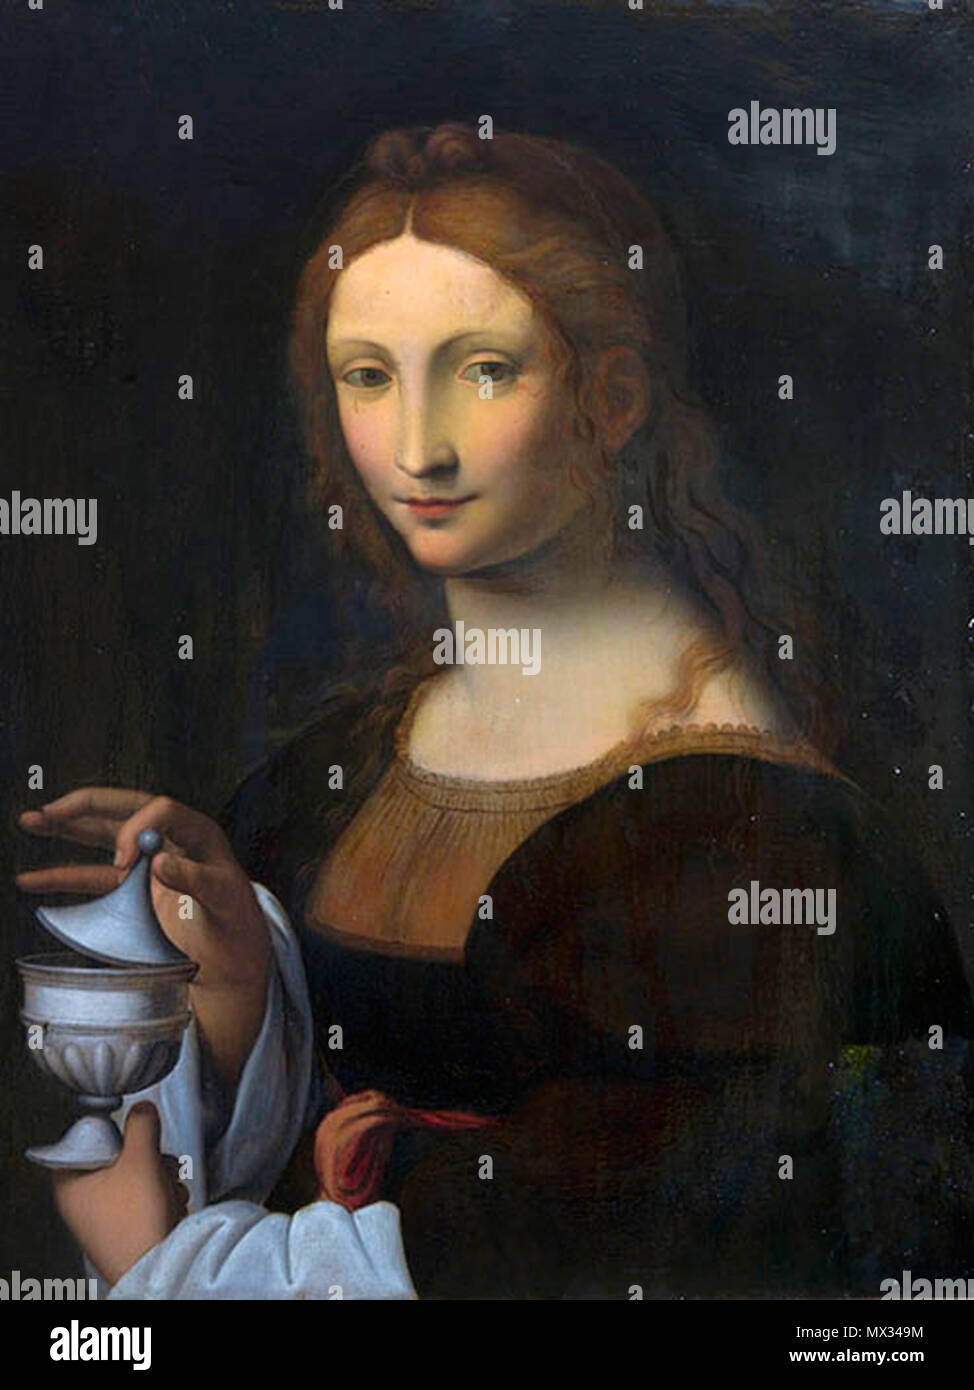 Leonardo da Vinci Portrait de Mère №1 Magdalena 367 Leonardo da Vinci Portrait de Mère №1 Magdalena Banque D'Images